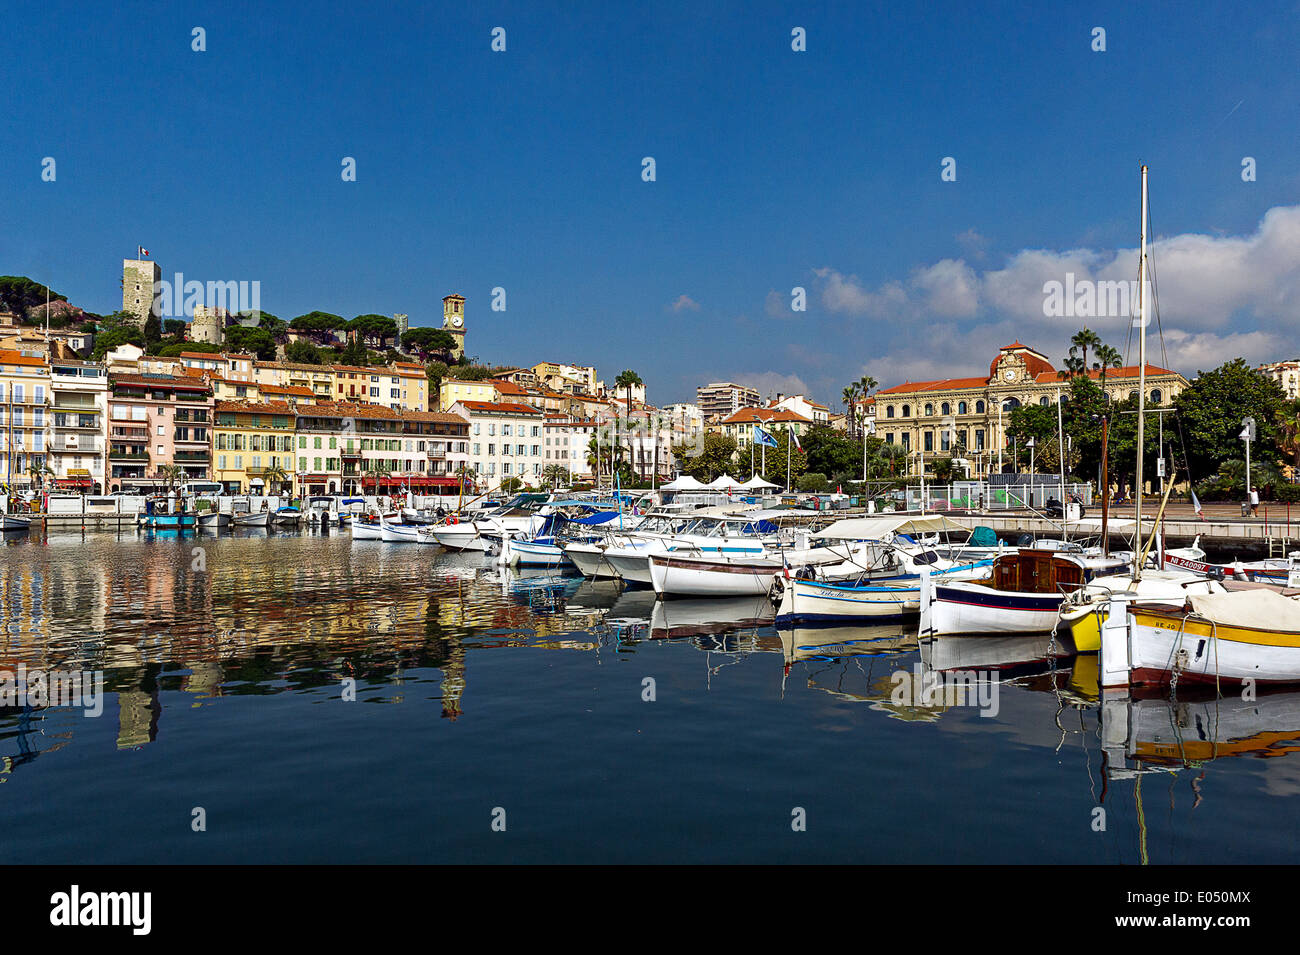 Europa, Francia, Alpes-Maritimes, Cannes. El casco antiguo y del puerto. Foto de stock